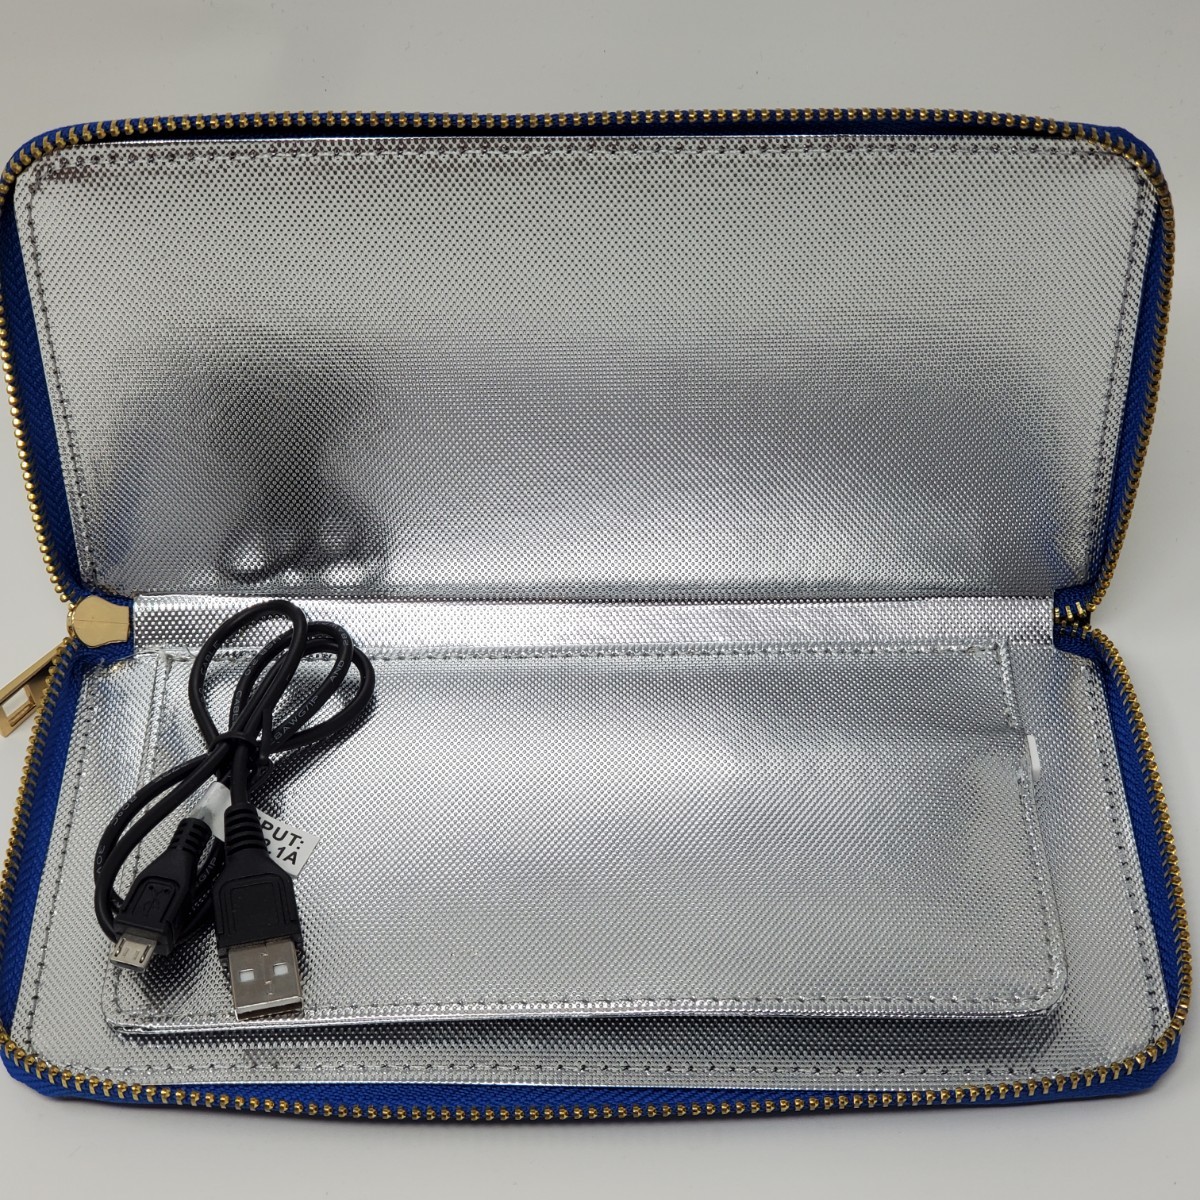 サンコー USBマスクリフレッシャーポータブル ブルー サンコーレアモノショップ 新品未使用 送料無料